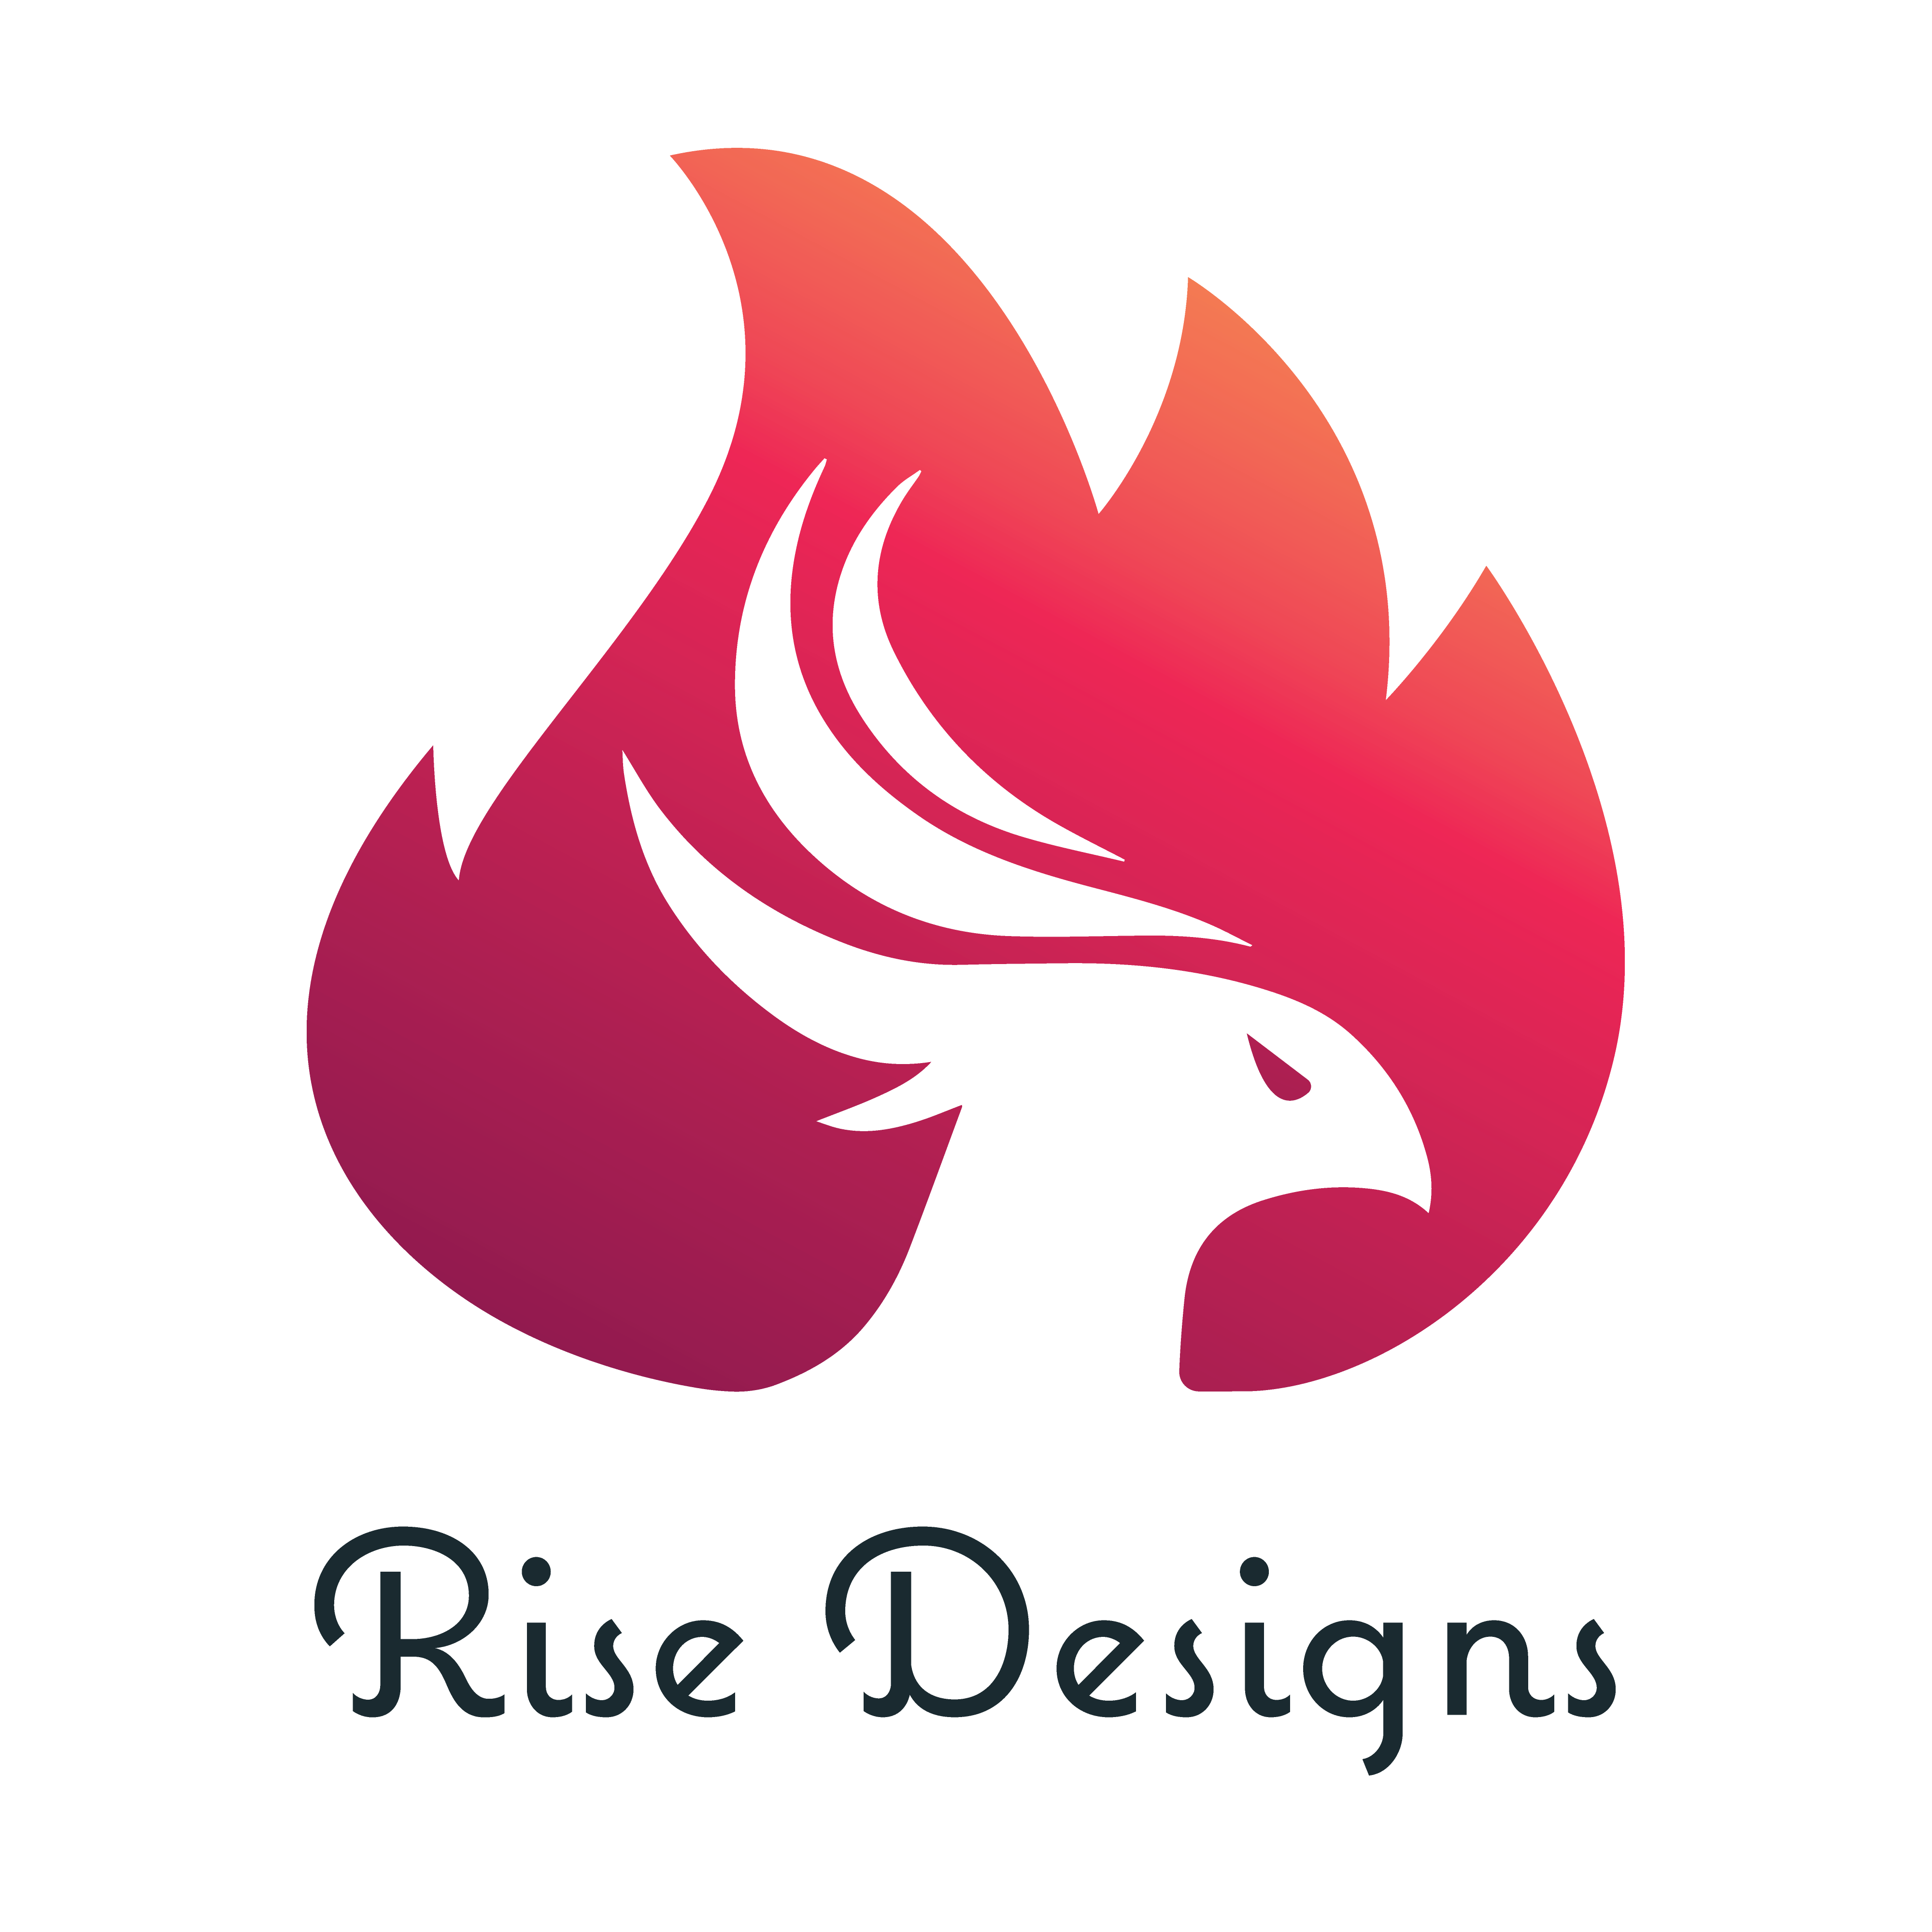 Rise Designs